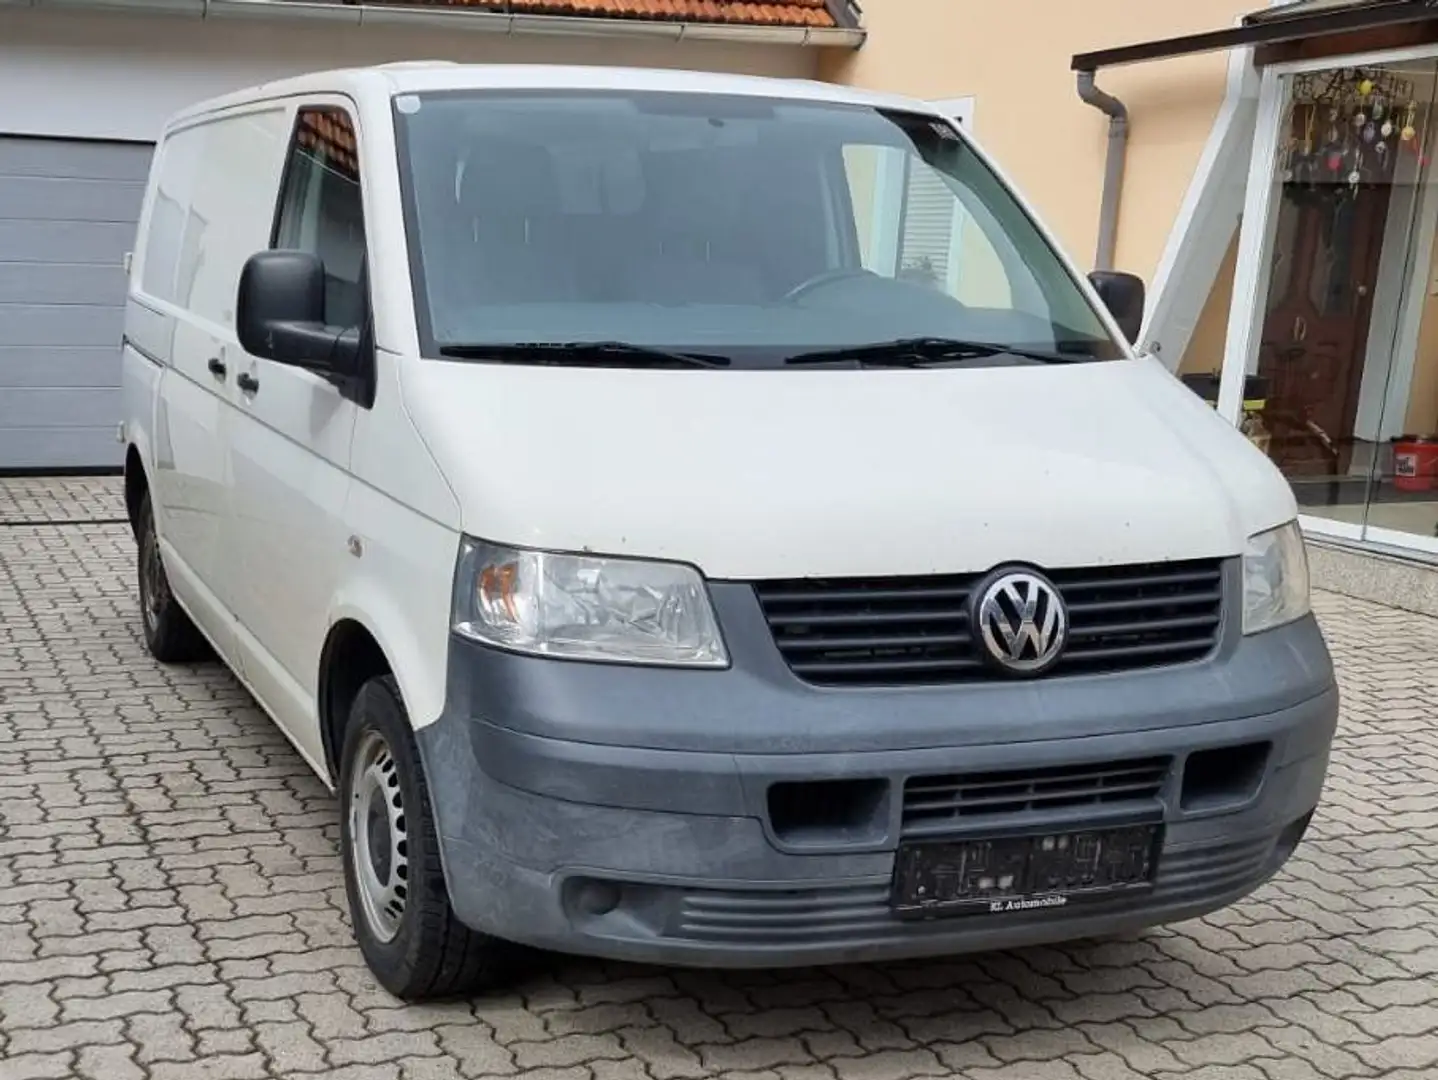 Volkswagen T5 Transporter Transporter in Grau gebraucht in Weng im Innkreis  für € 6 500